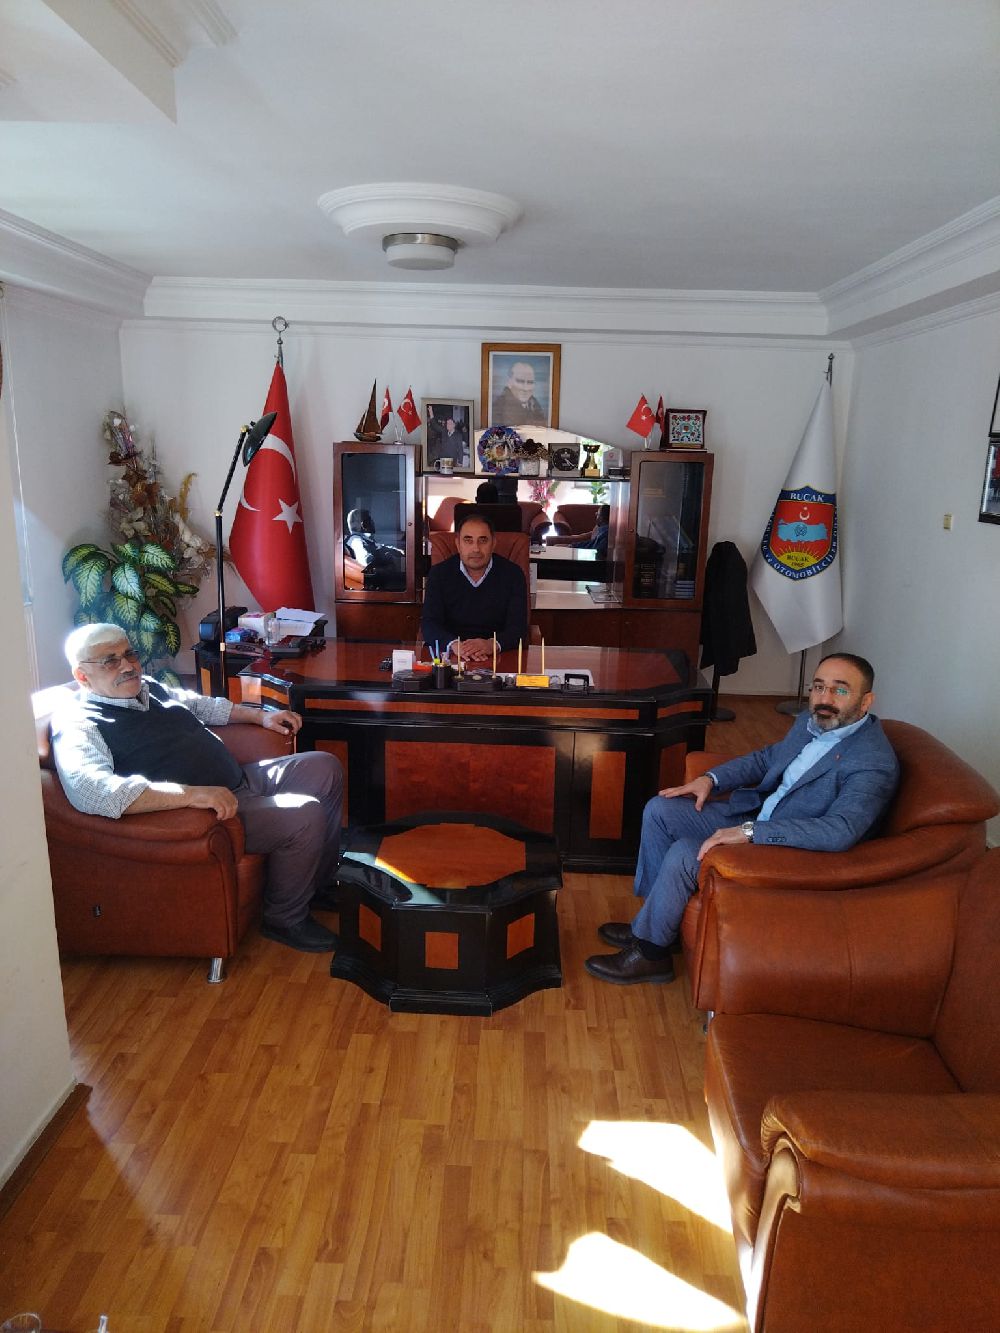 Başkan aday adayı Ahmet Altundaş, STK'ları ziyaret ediyor